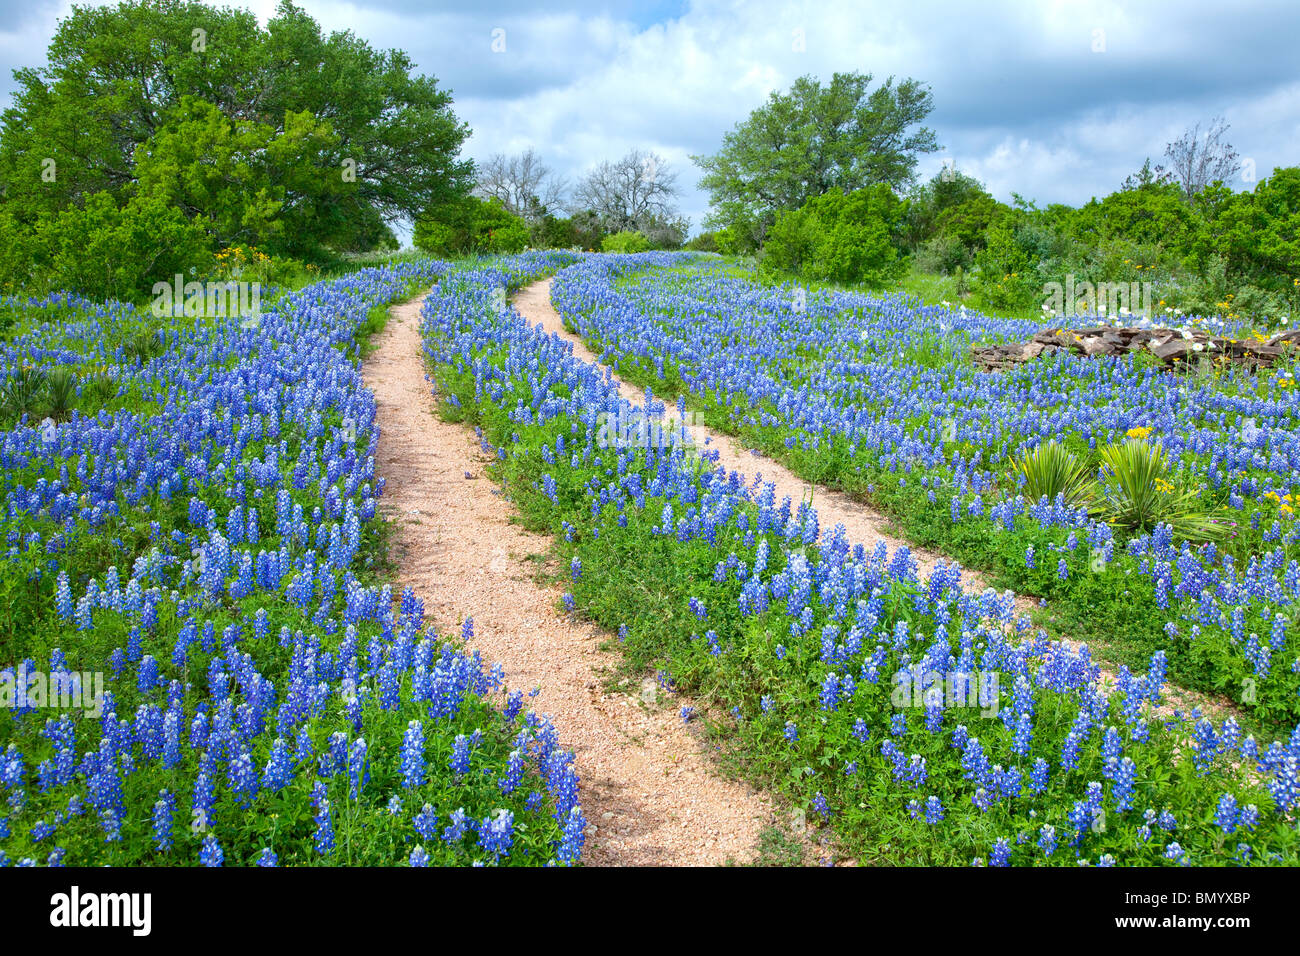 Double tracks through a field of Texas bluebonnets near Sandy, Texas. Stock Photo